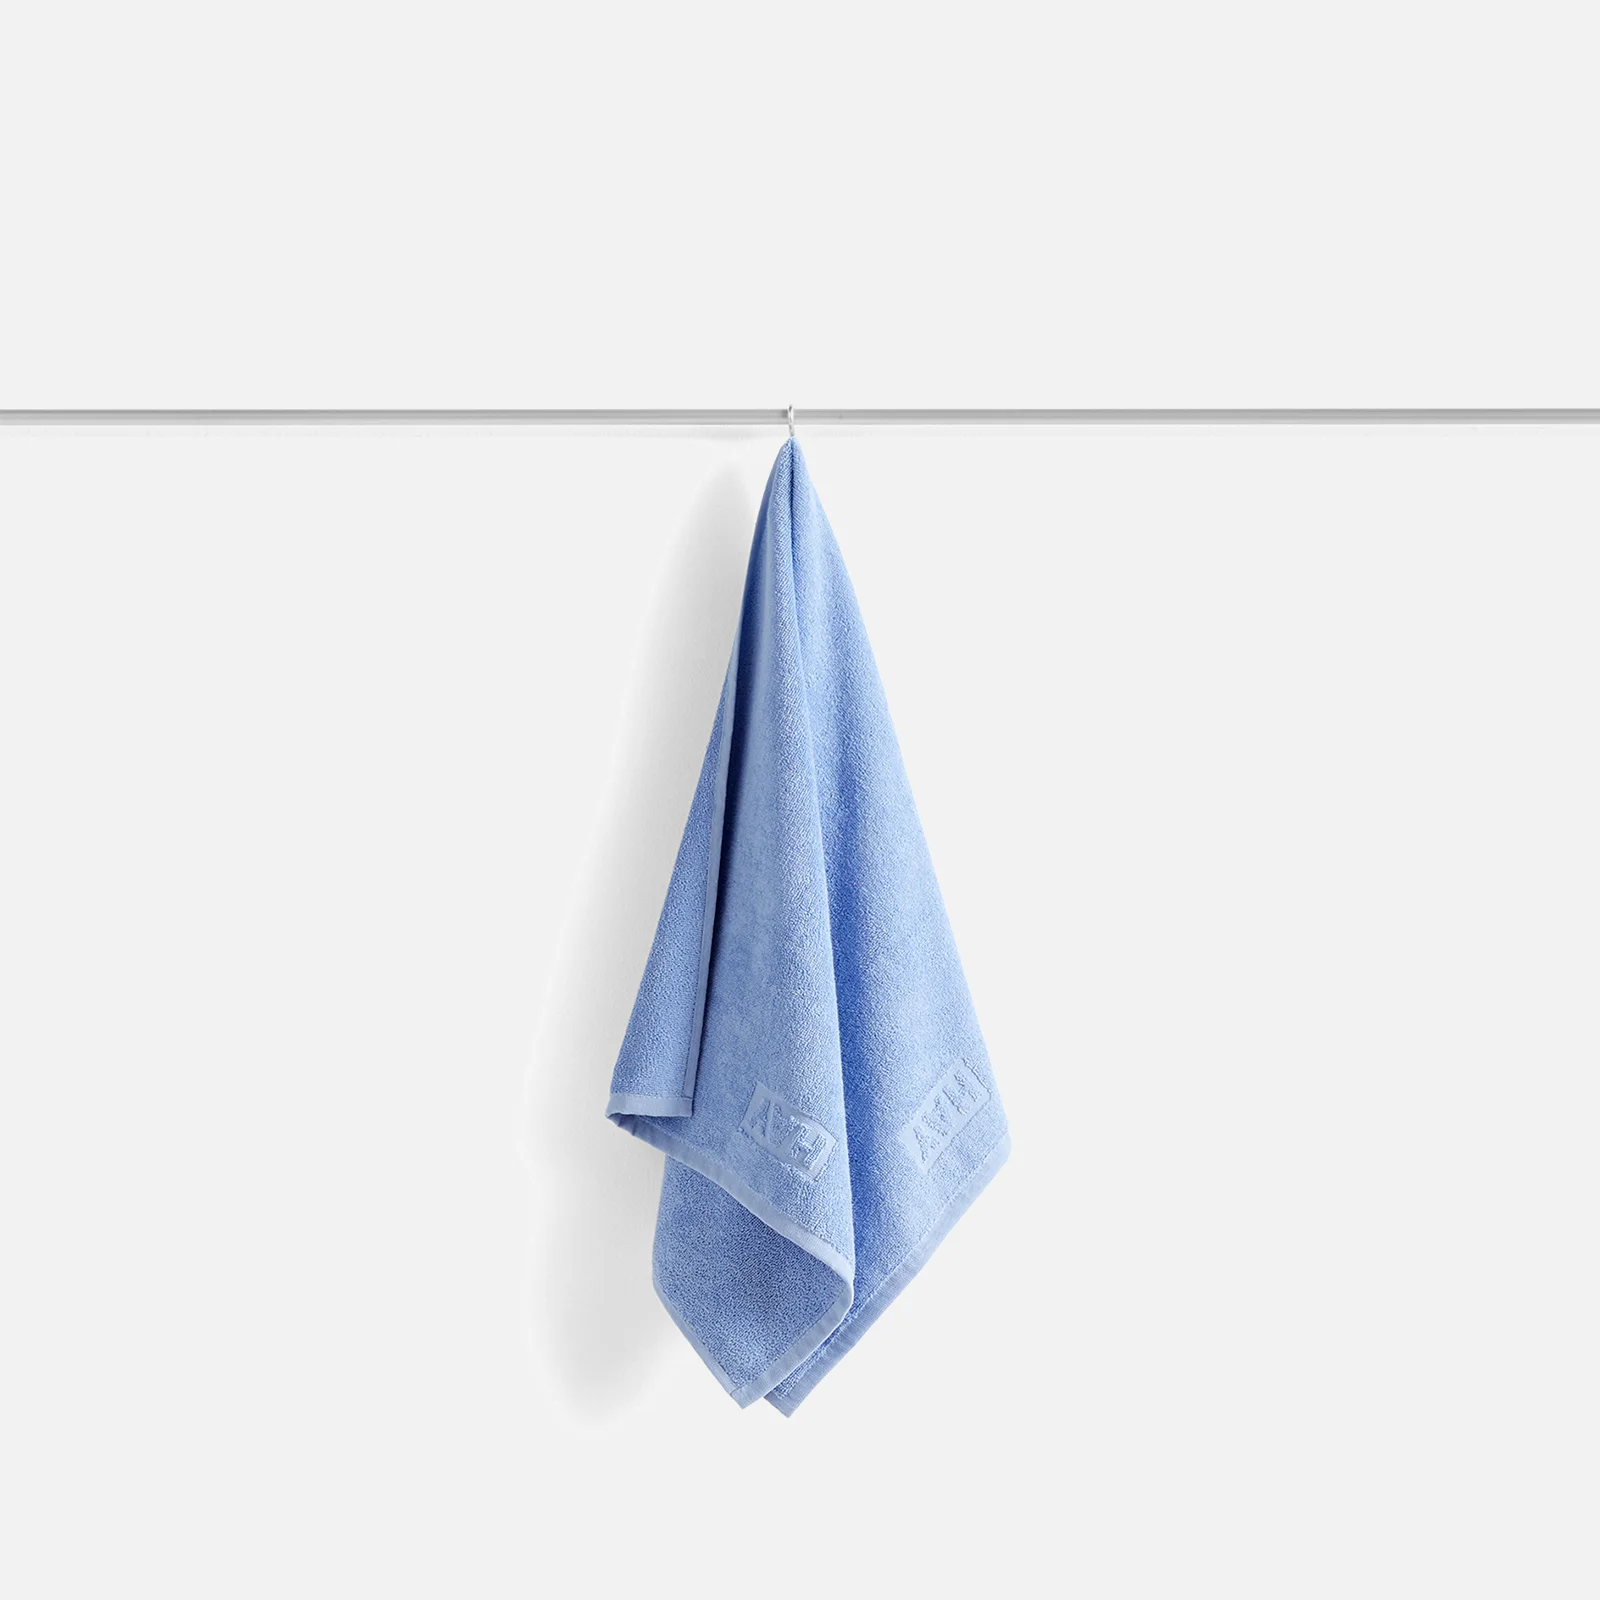 HAY Mono Towel - Sky Blue Image 1